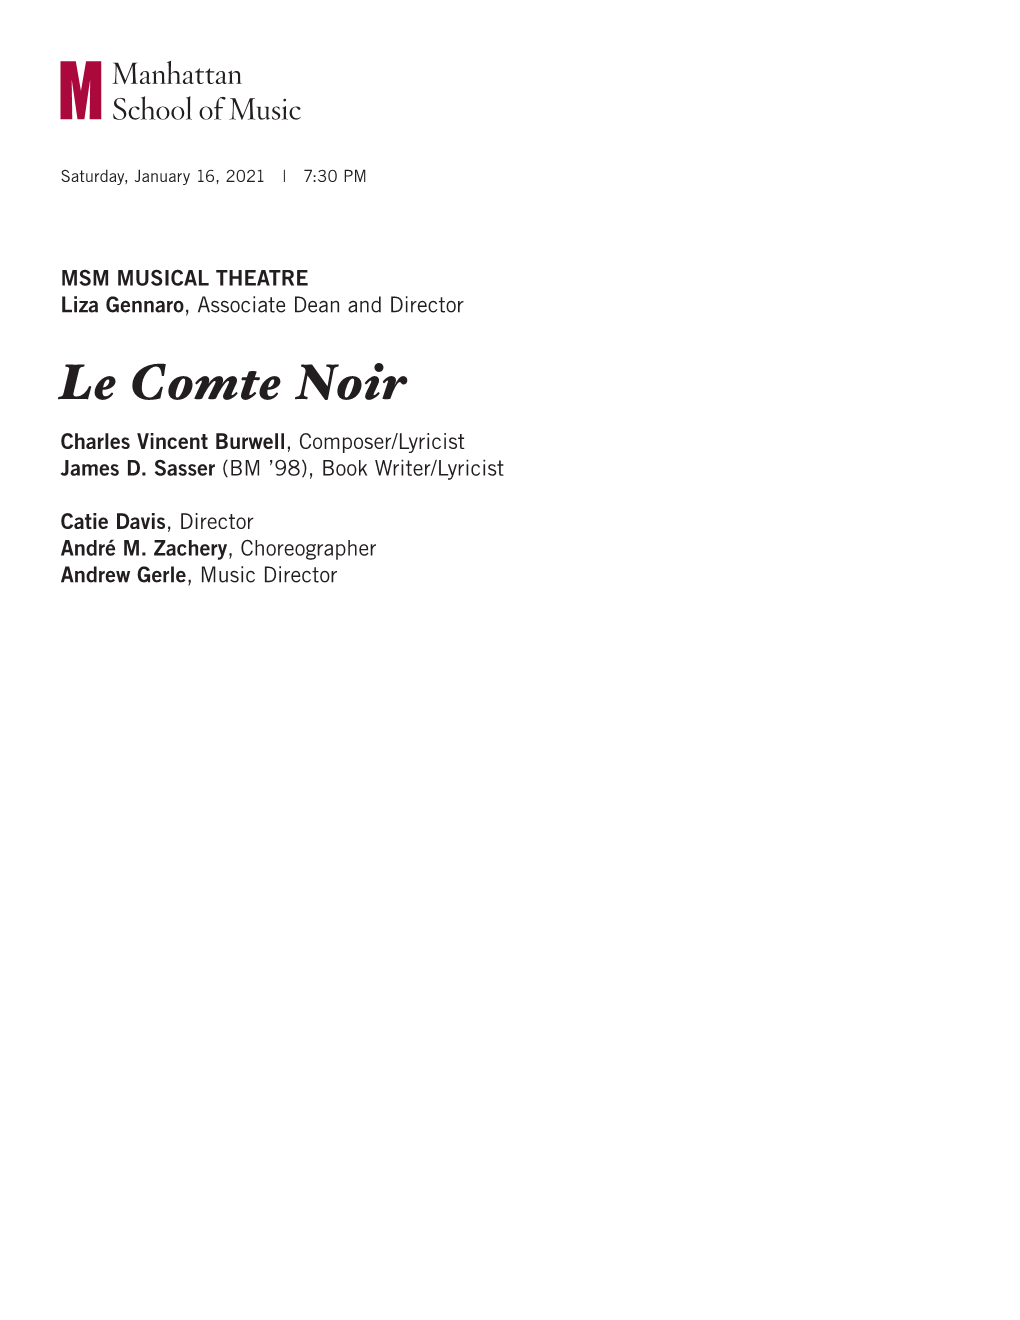 Le Comte Noir Charles Vincent Burwell, Composer/Lyricist James D